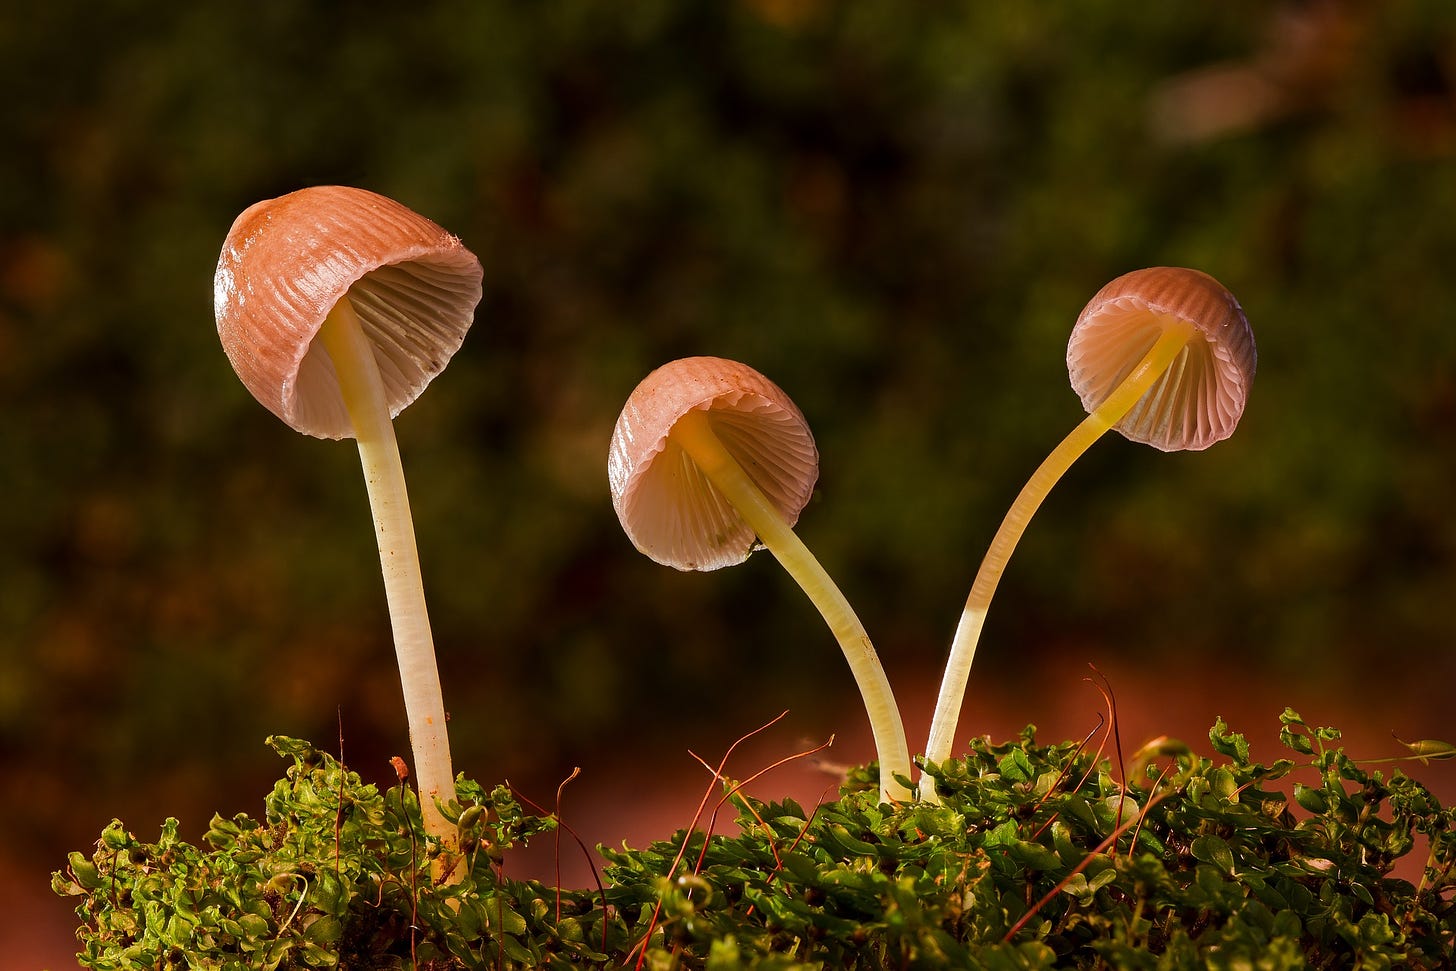 Image of three mushrooms